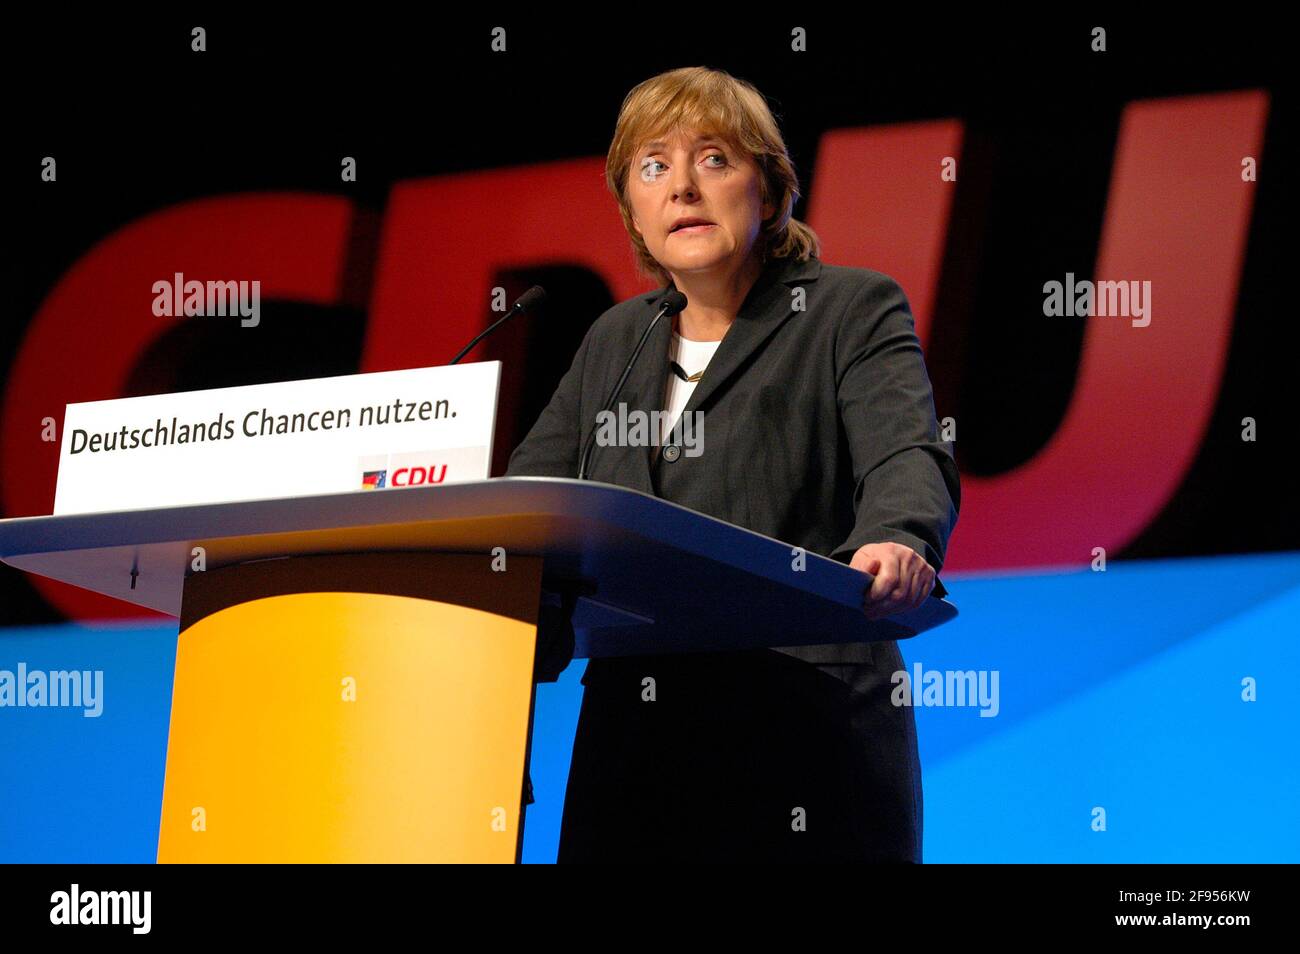 DEU, Deutschland, Düsseldorf, 06.12.2004: Angela Merkel, Bundesvorsitzende der CDU am Rednerpult zu Beginn des Bundesparteitags der CDU 2004 in Düssel Foto Stock